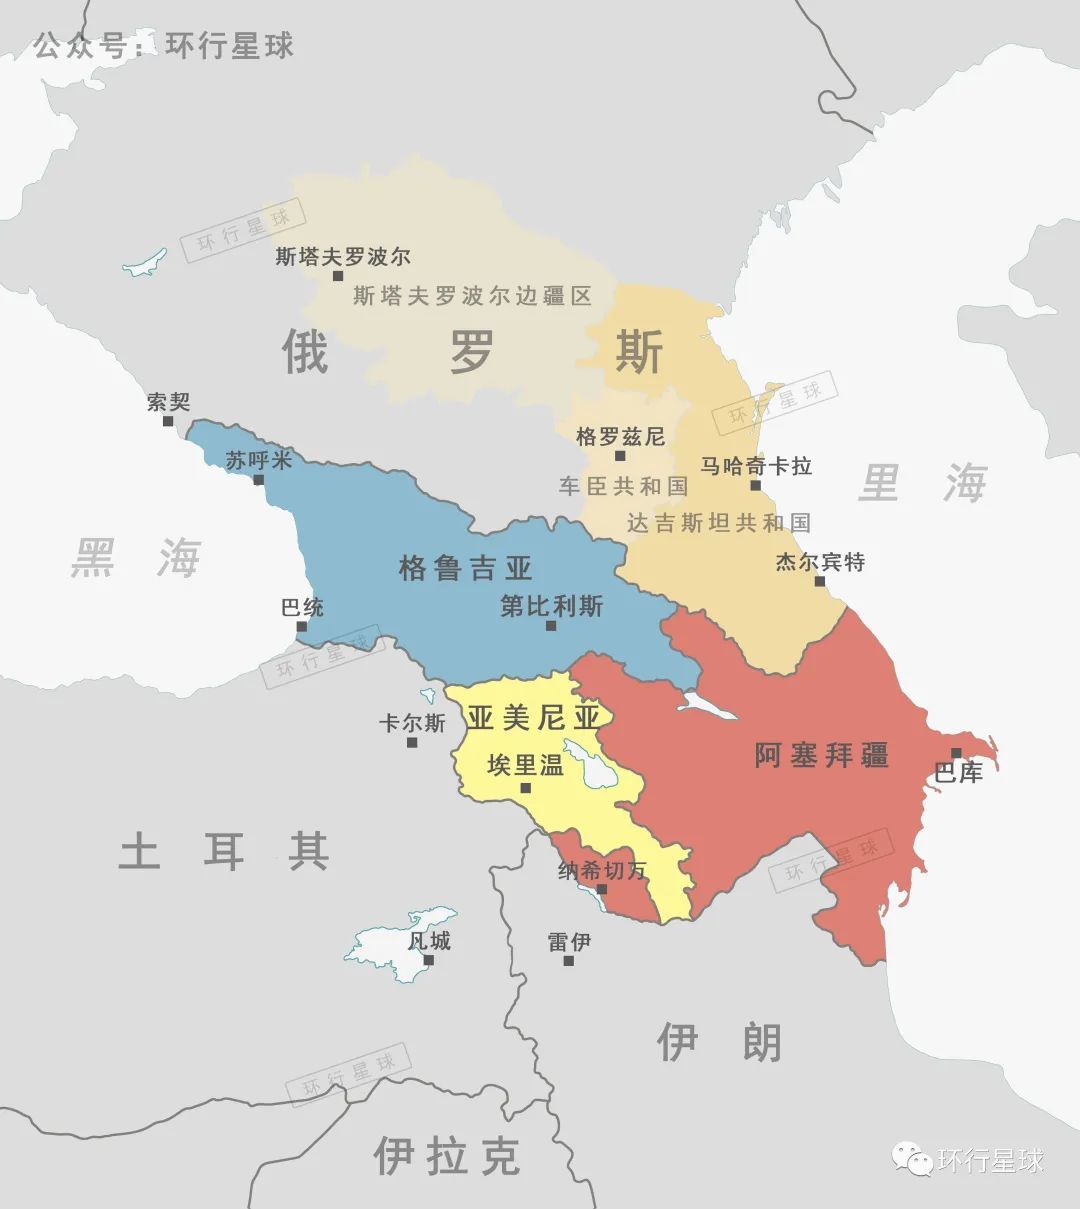 俄罗斯的达吉斯坦共和国、车臣共和国 与南边的高加索三国 达吉斯坦共和国首府为马哈奇卡拉